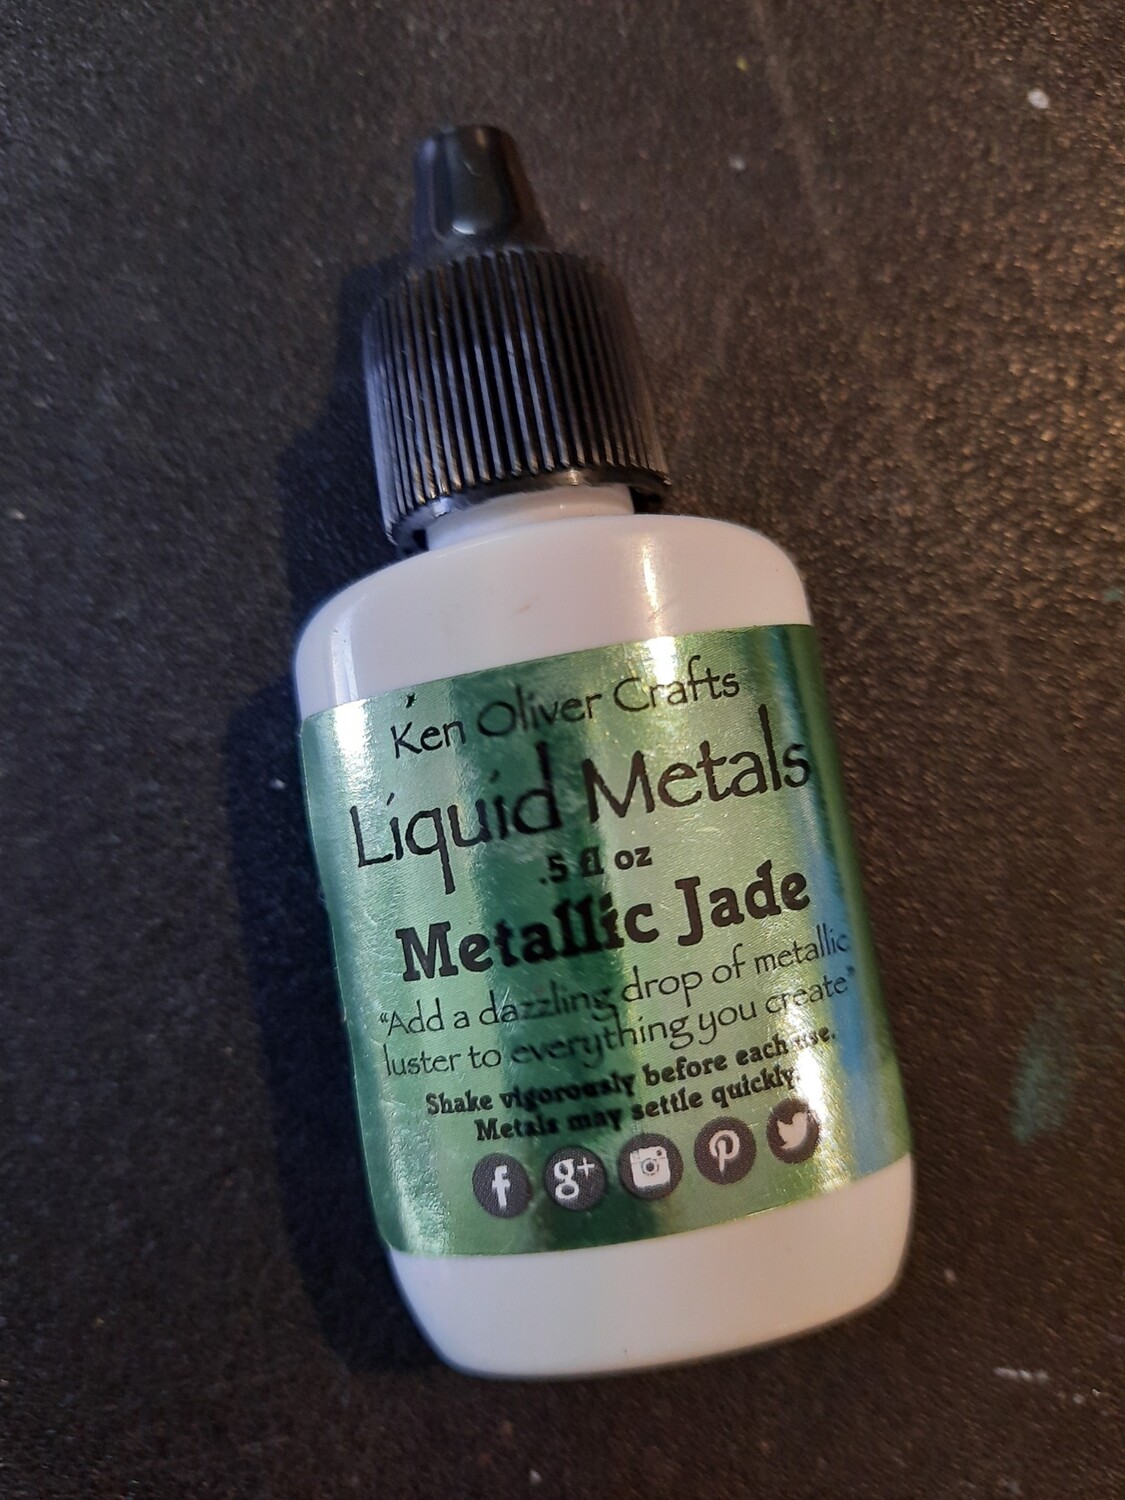 Ken oliver metallic jade liquid